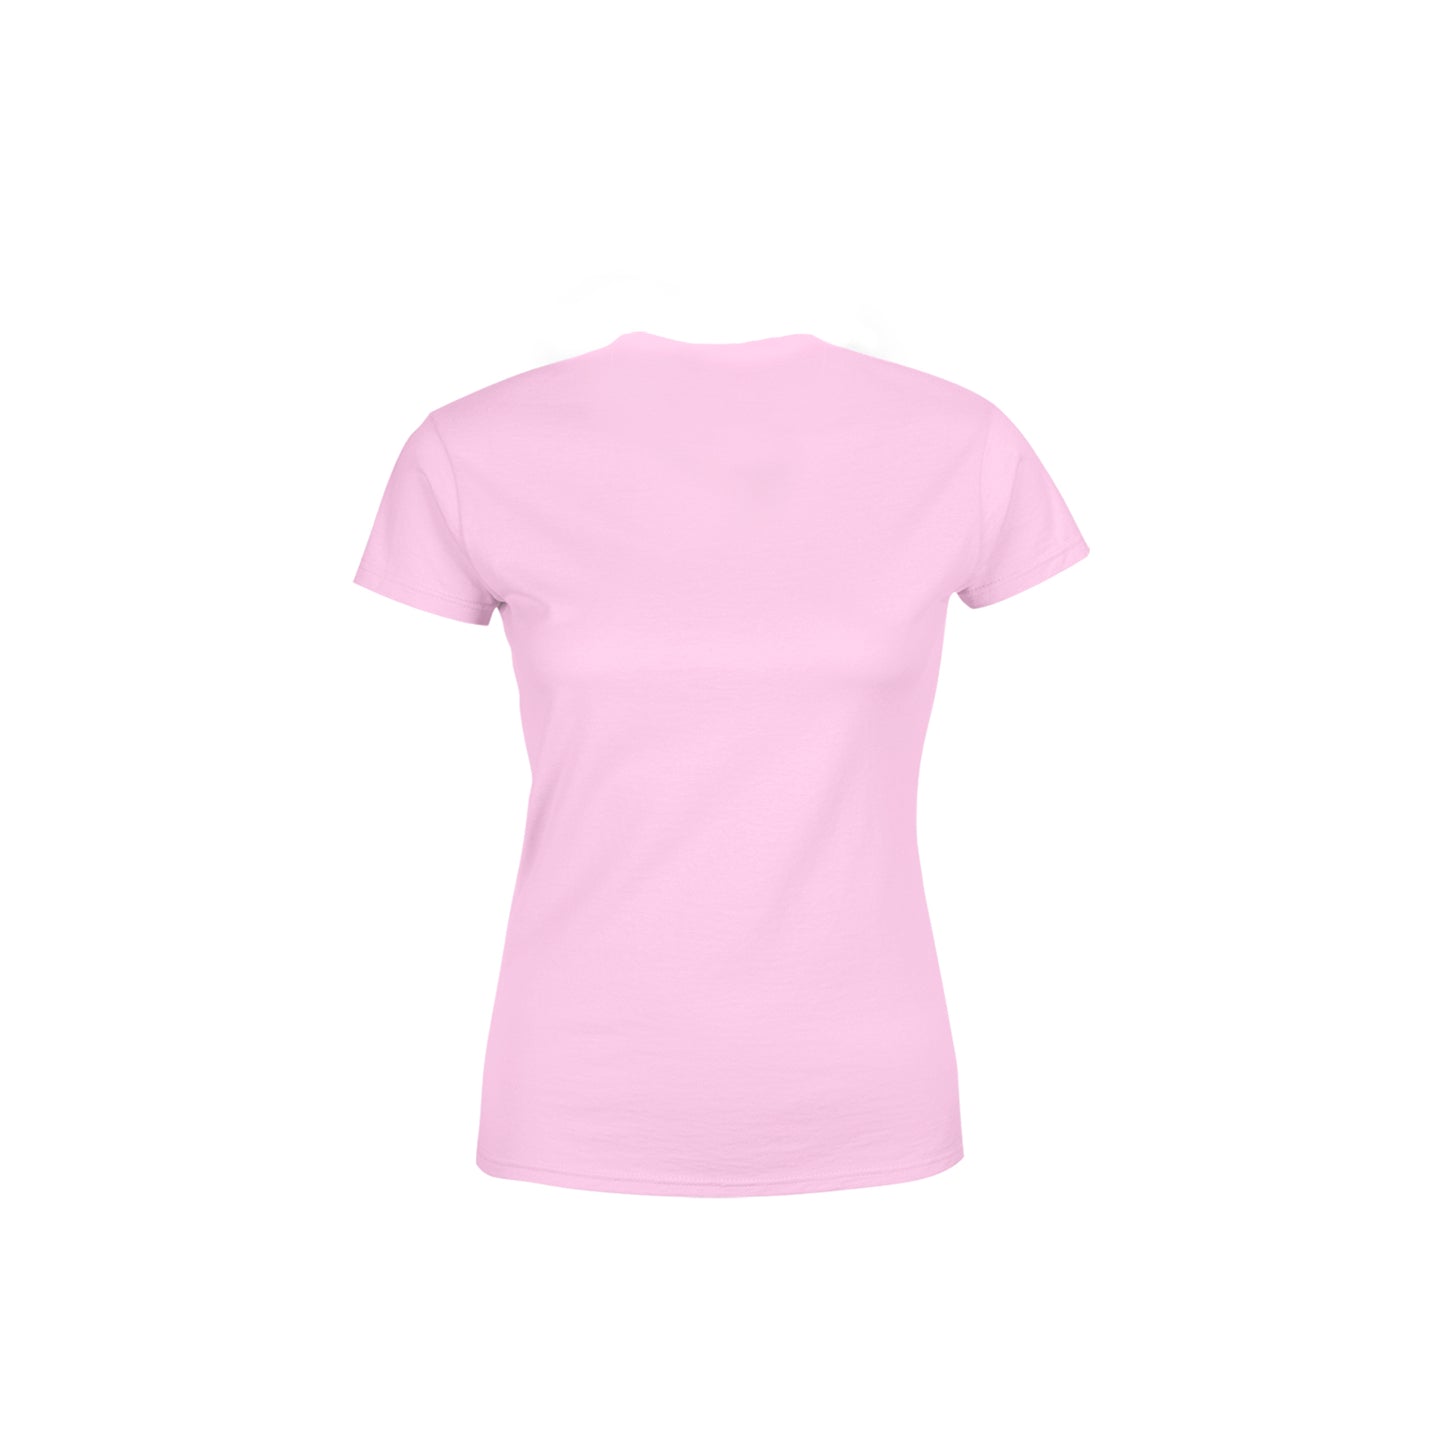 00 Number Women's T-Shirt (Light Pink)